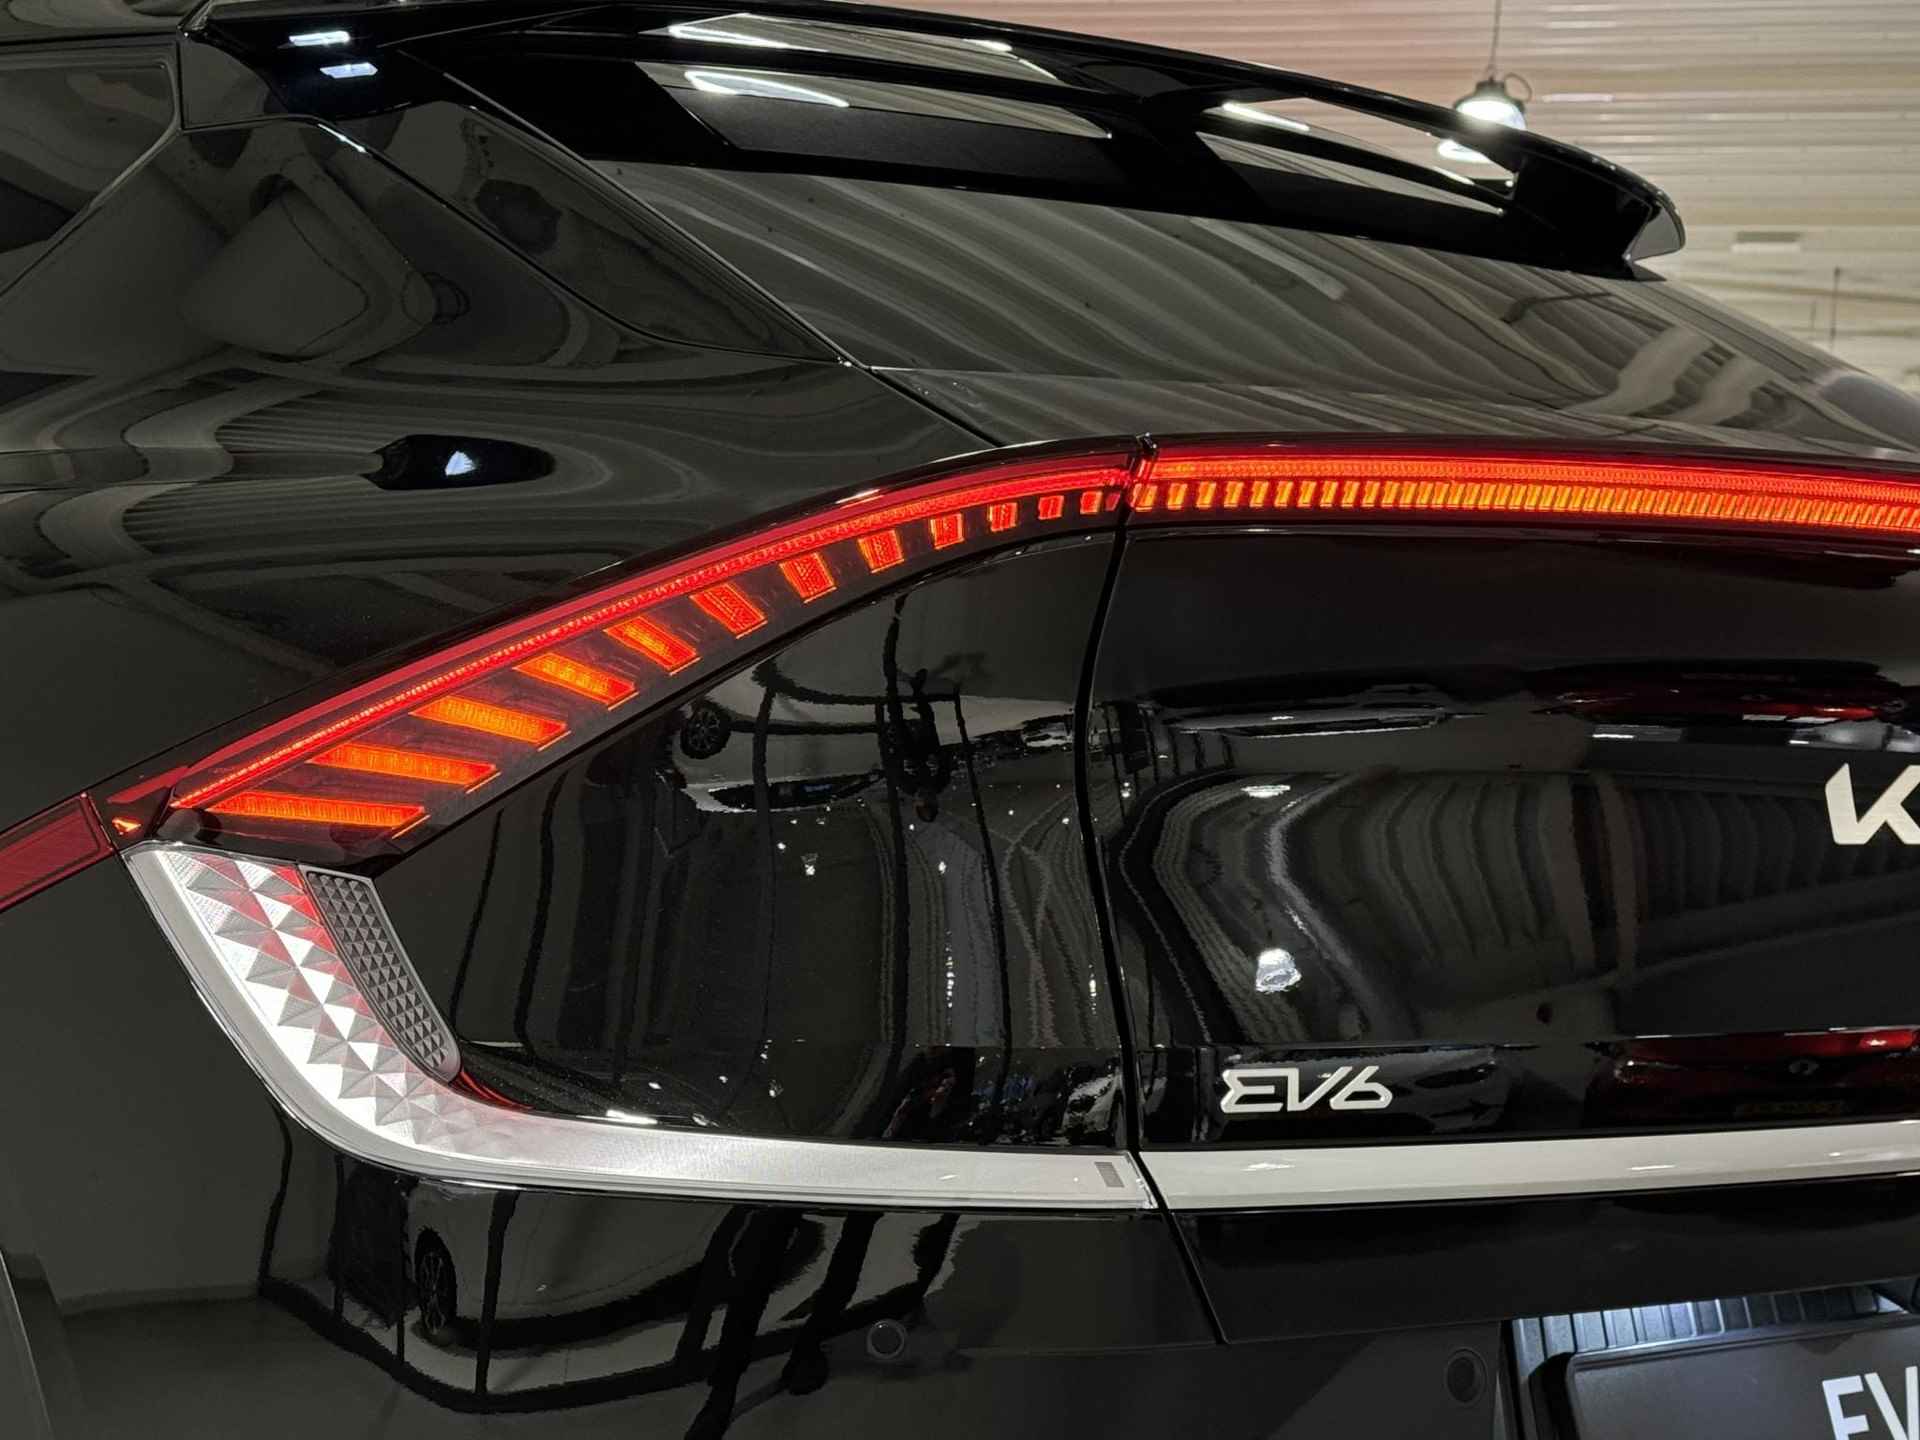 Kia EV6 Light Edition 58 kWh | €2.950,- overheidssubsidie + €2.950,- Kia subsidie! | €5.900,- voordeel! | Beperkte beschikbaarheid! | 180kW laadvermogen | 394 km WLTP-actieradius | Stoel-/stuurverwarming - 12/36